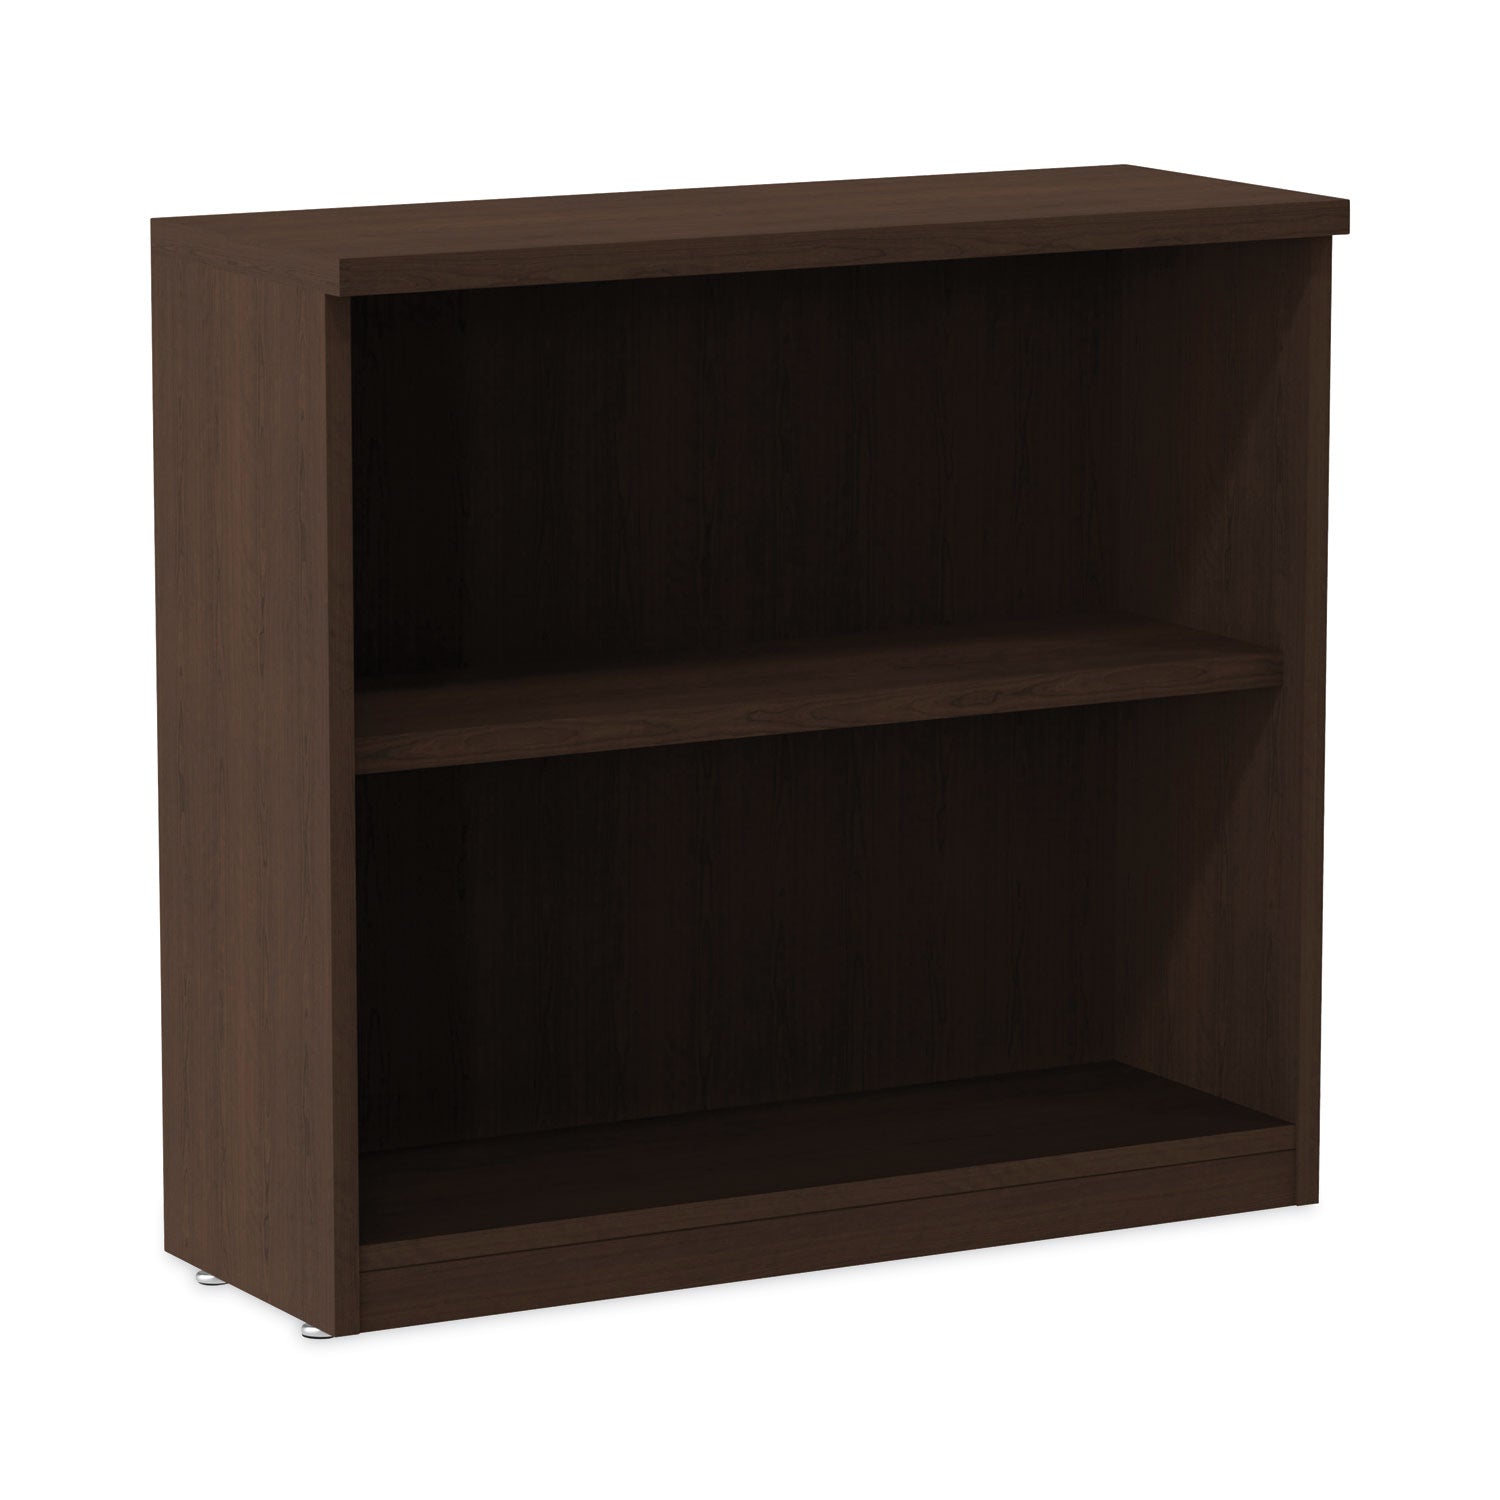 alera-valencia-series-bookcase-two-shelf-3175w-x-14d-x-295h-espresso_aleva633032es - 1